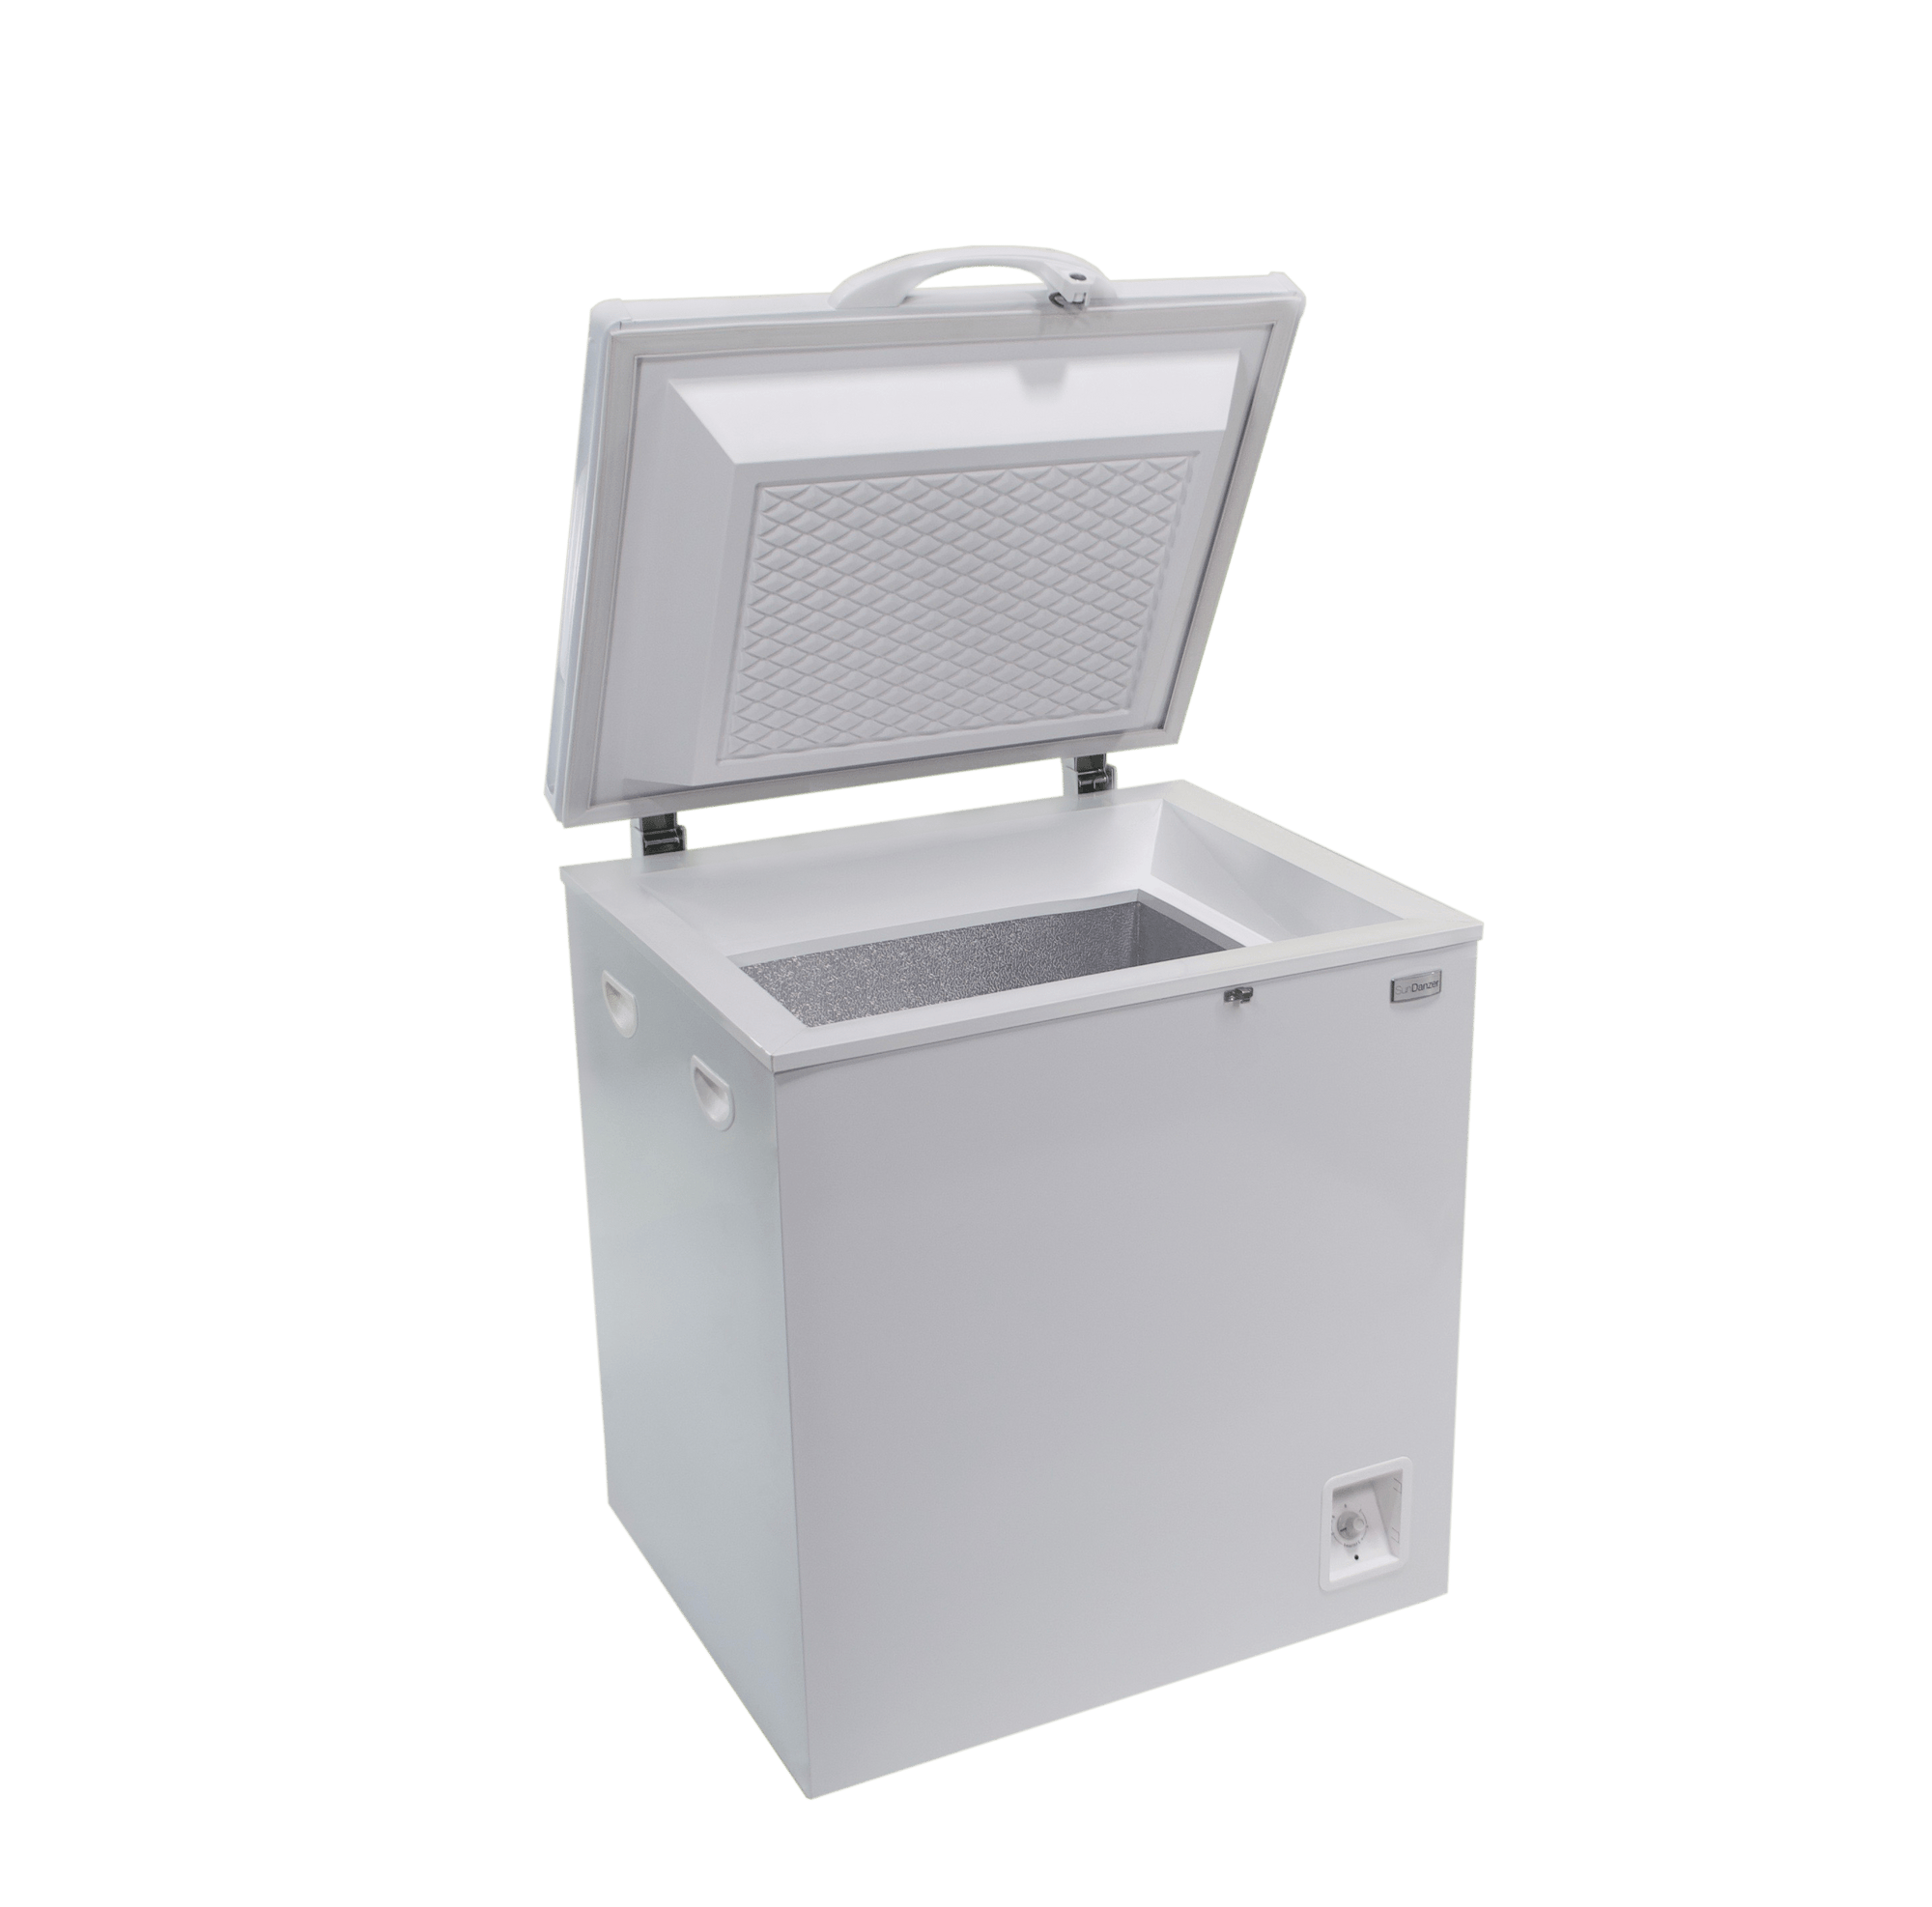 Sundanzer Solar Appliances Add A/C Power Option (+ $120.00) Sundanzer DCR50 50 Litre (Liter) 1.8 Cu. Ft. Solar DC 12v/24v Chest Refrigerator